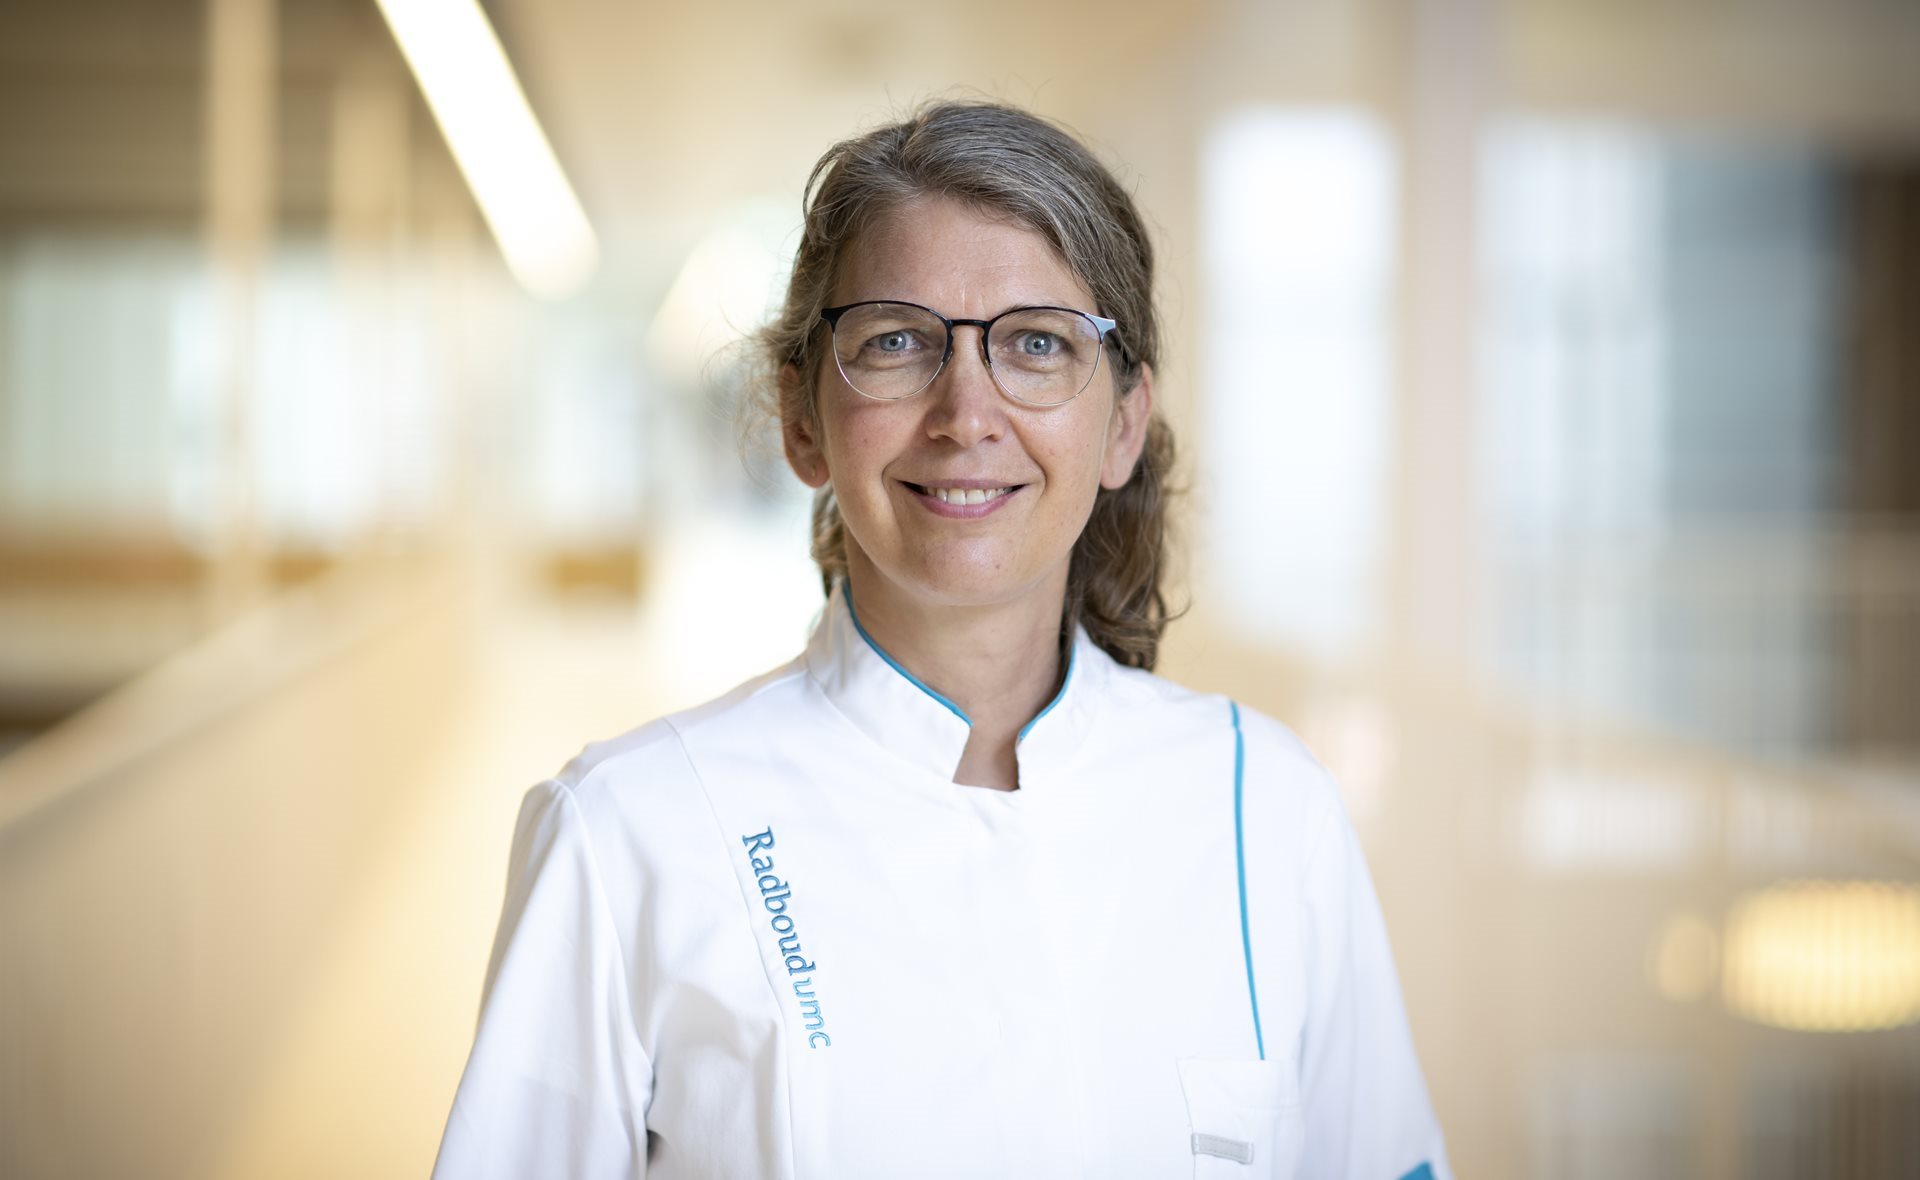 Nicole Voormans è stata nominata Professore di Malattie Muscolari